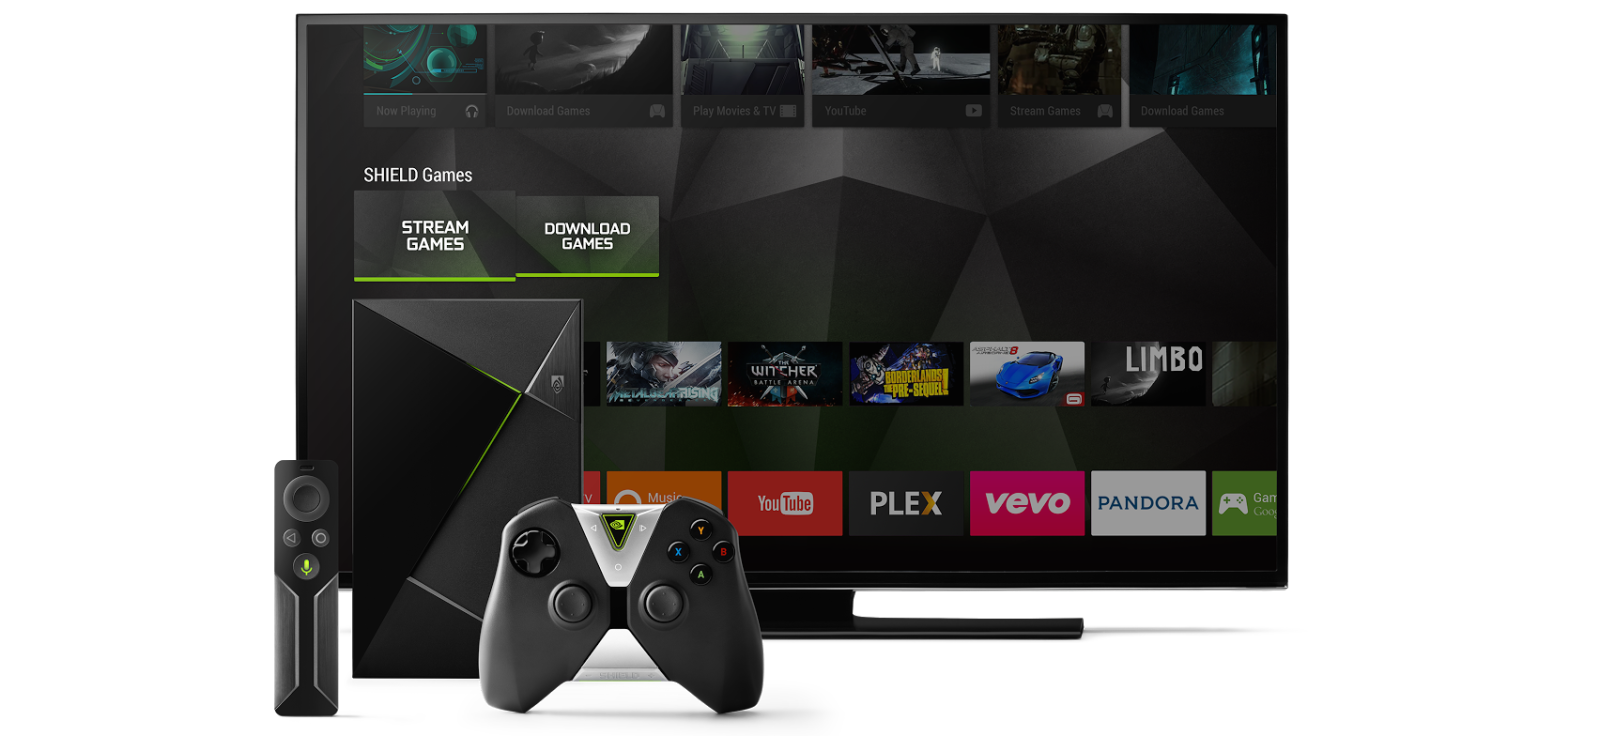 La Nvidia Shield TV reçoit la nouvelle interface d'Android TV